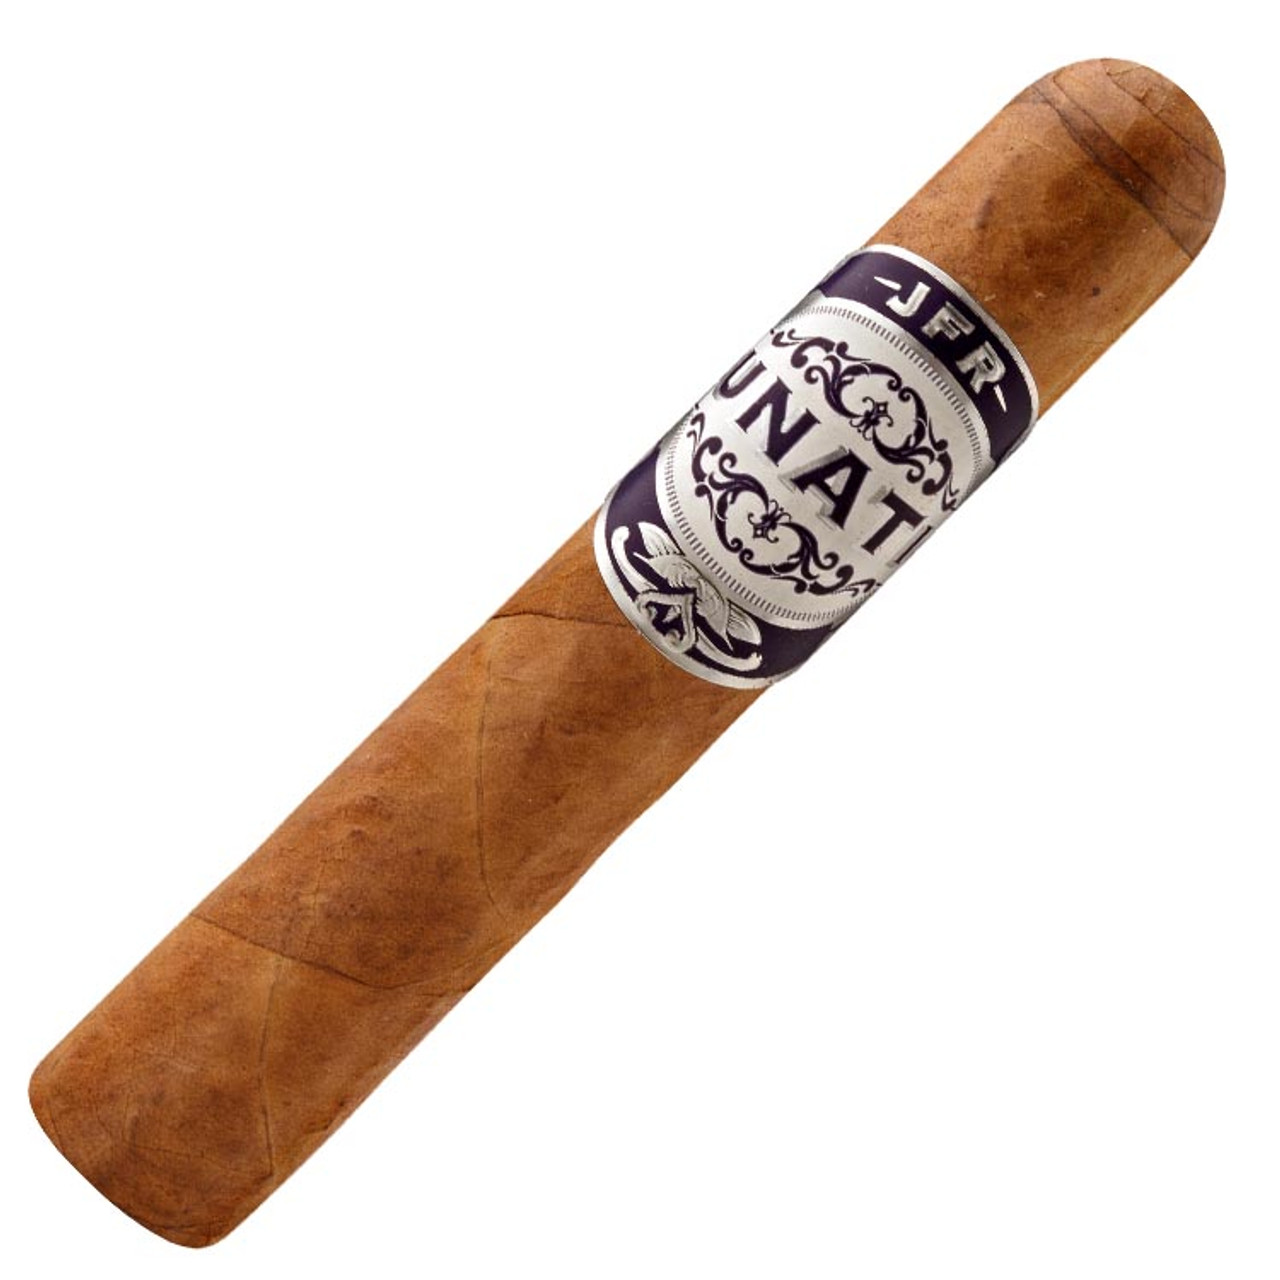 Casa Fernandez Lunatic Short Robusto Habano Cigars - 4.25 x 52 (Box of 28)